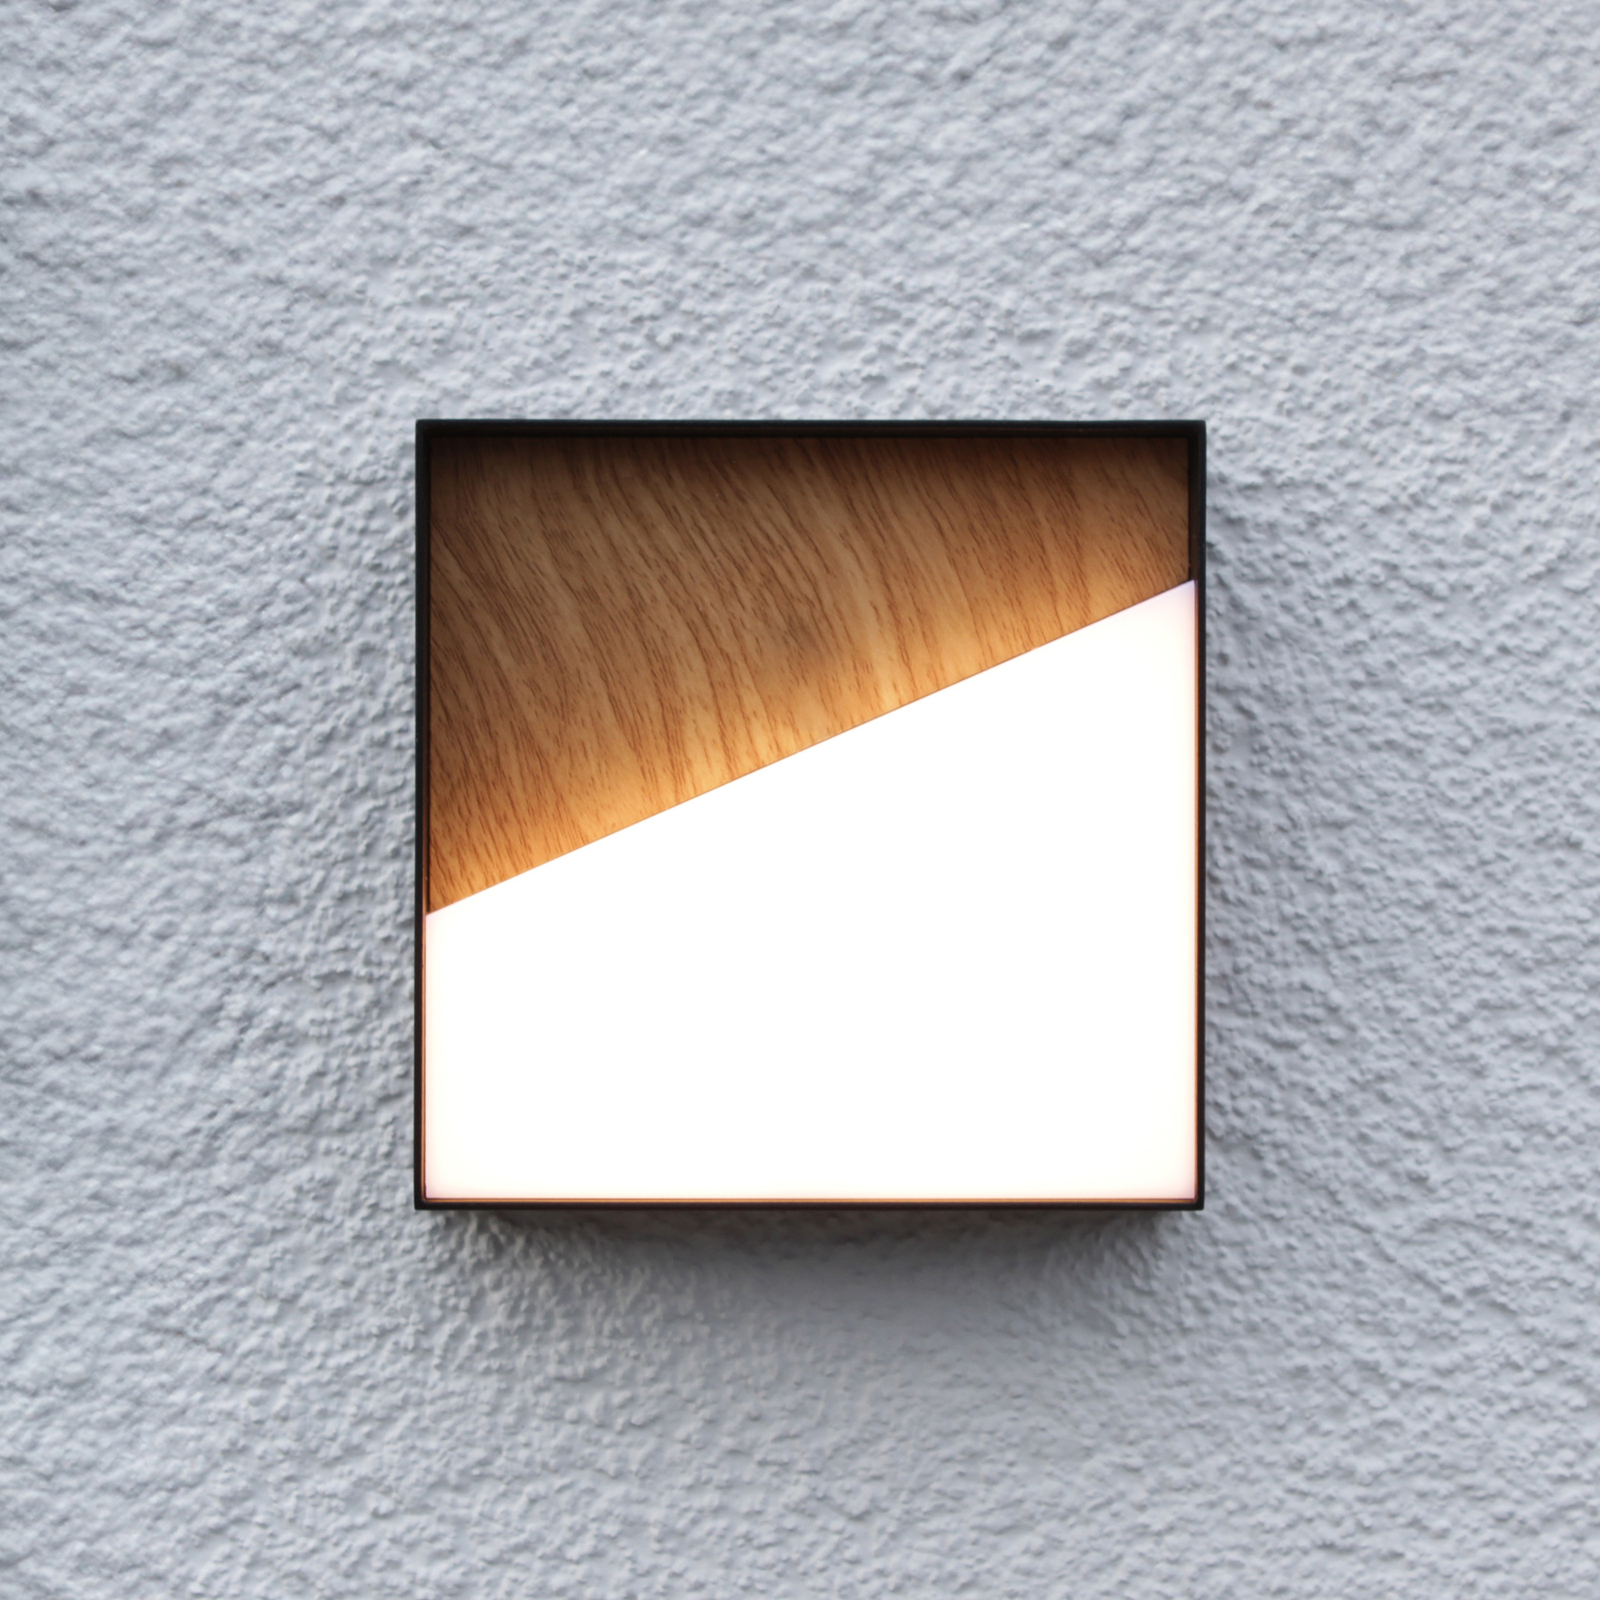 Applique d'extérieur LED rechargeable Meg, couleur bois, 15 x 15 cm